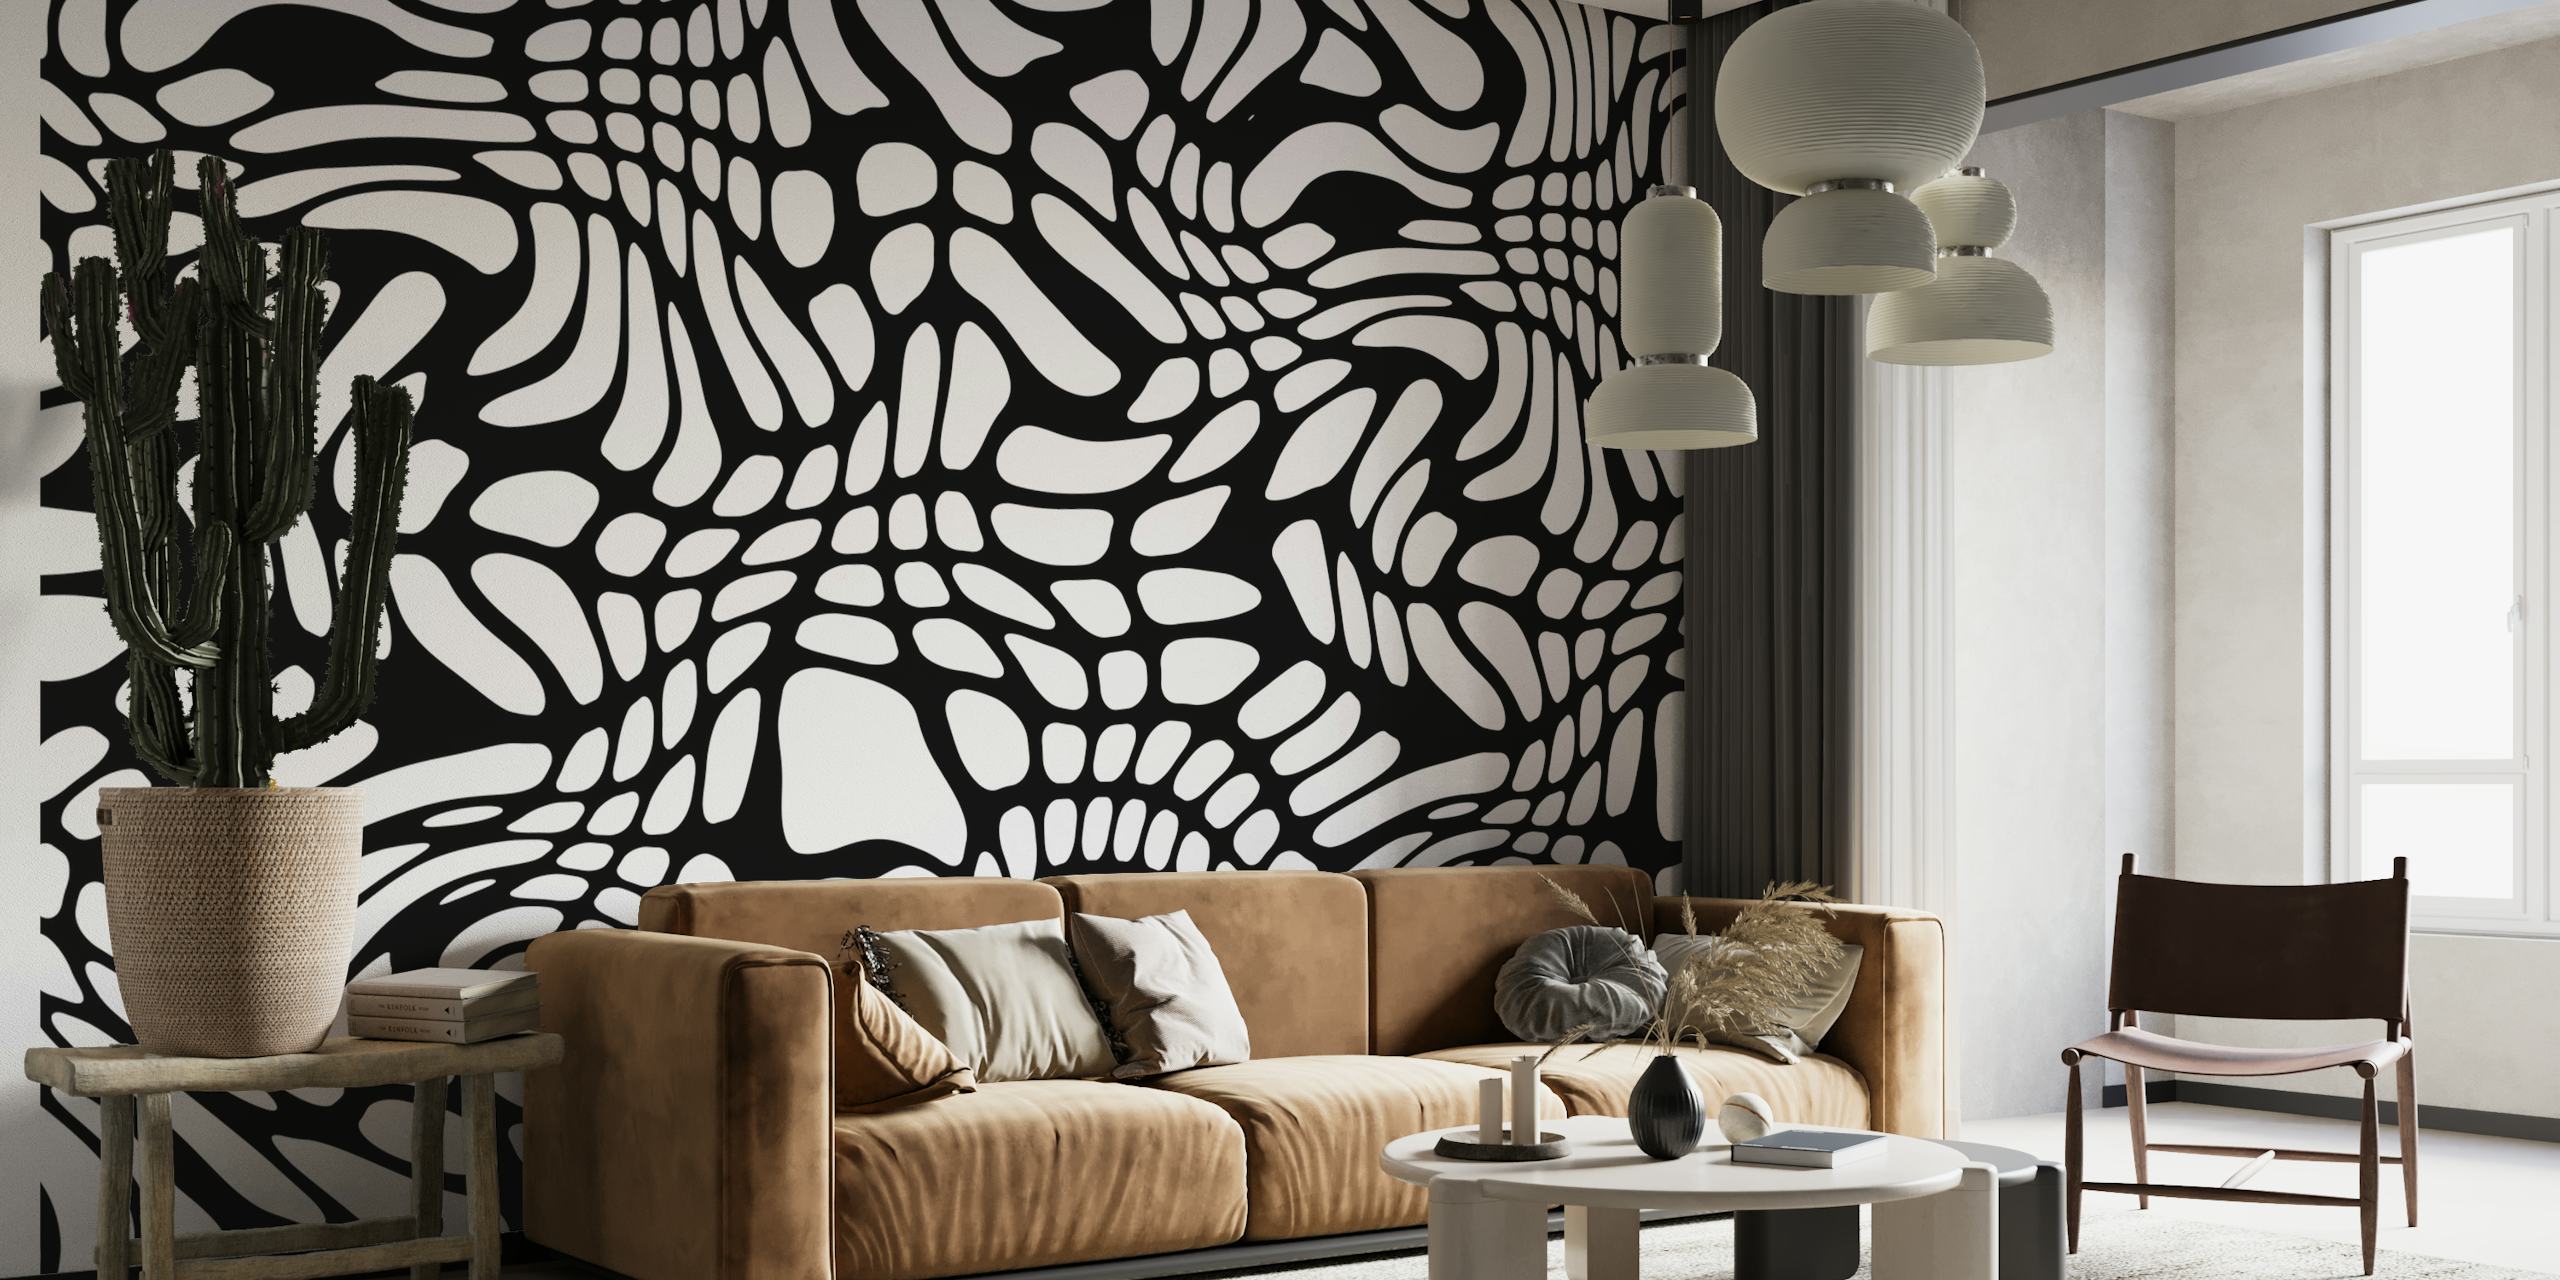 Papier peint mural de formes abstraites en noir et blanc pour une décoration intérieure moderne